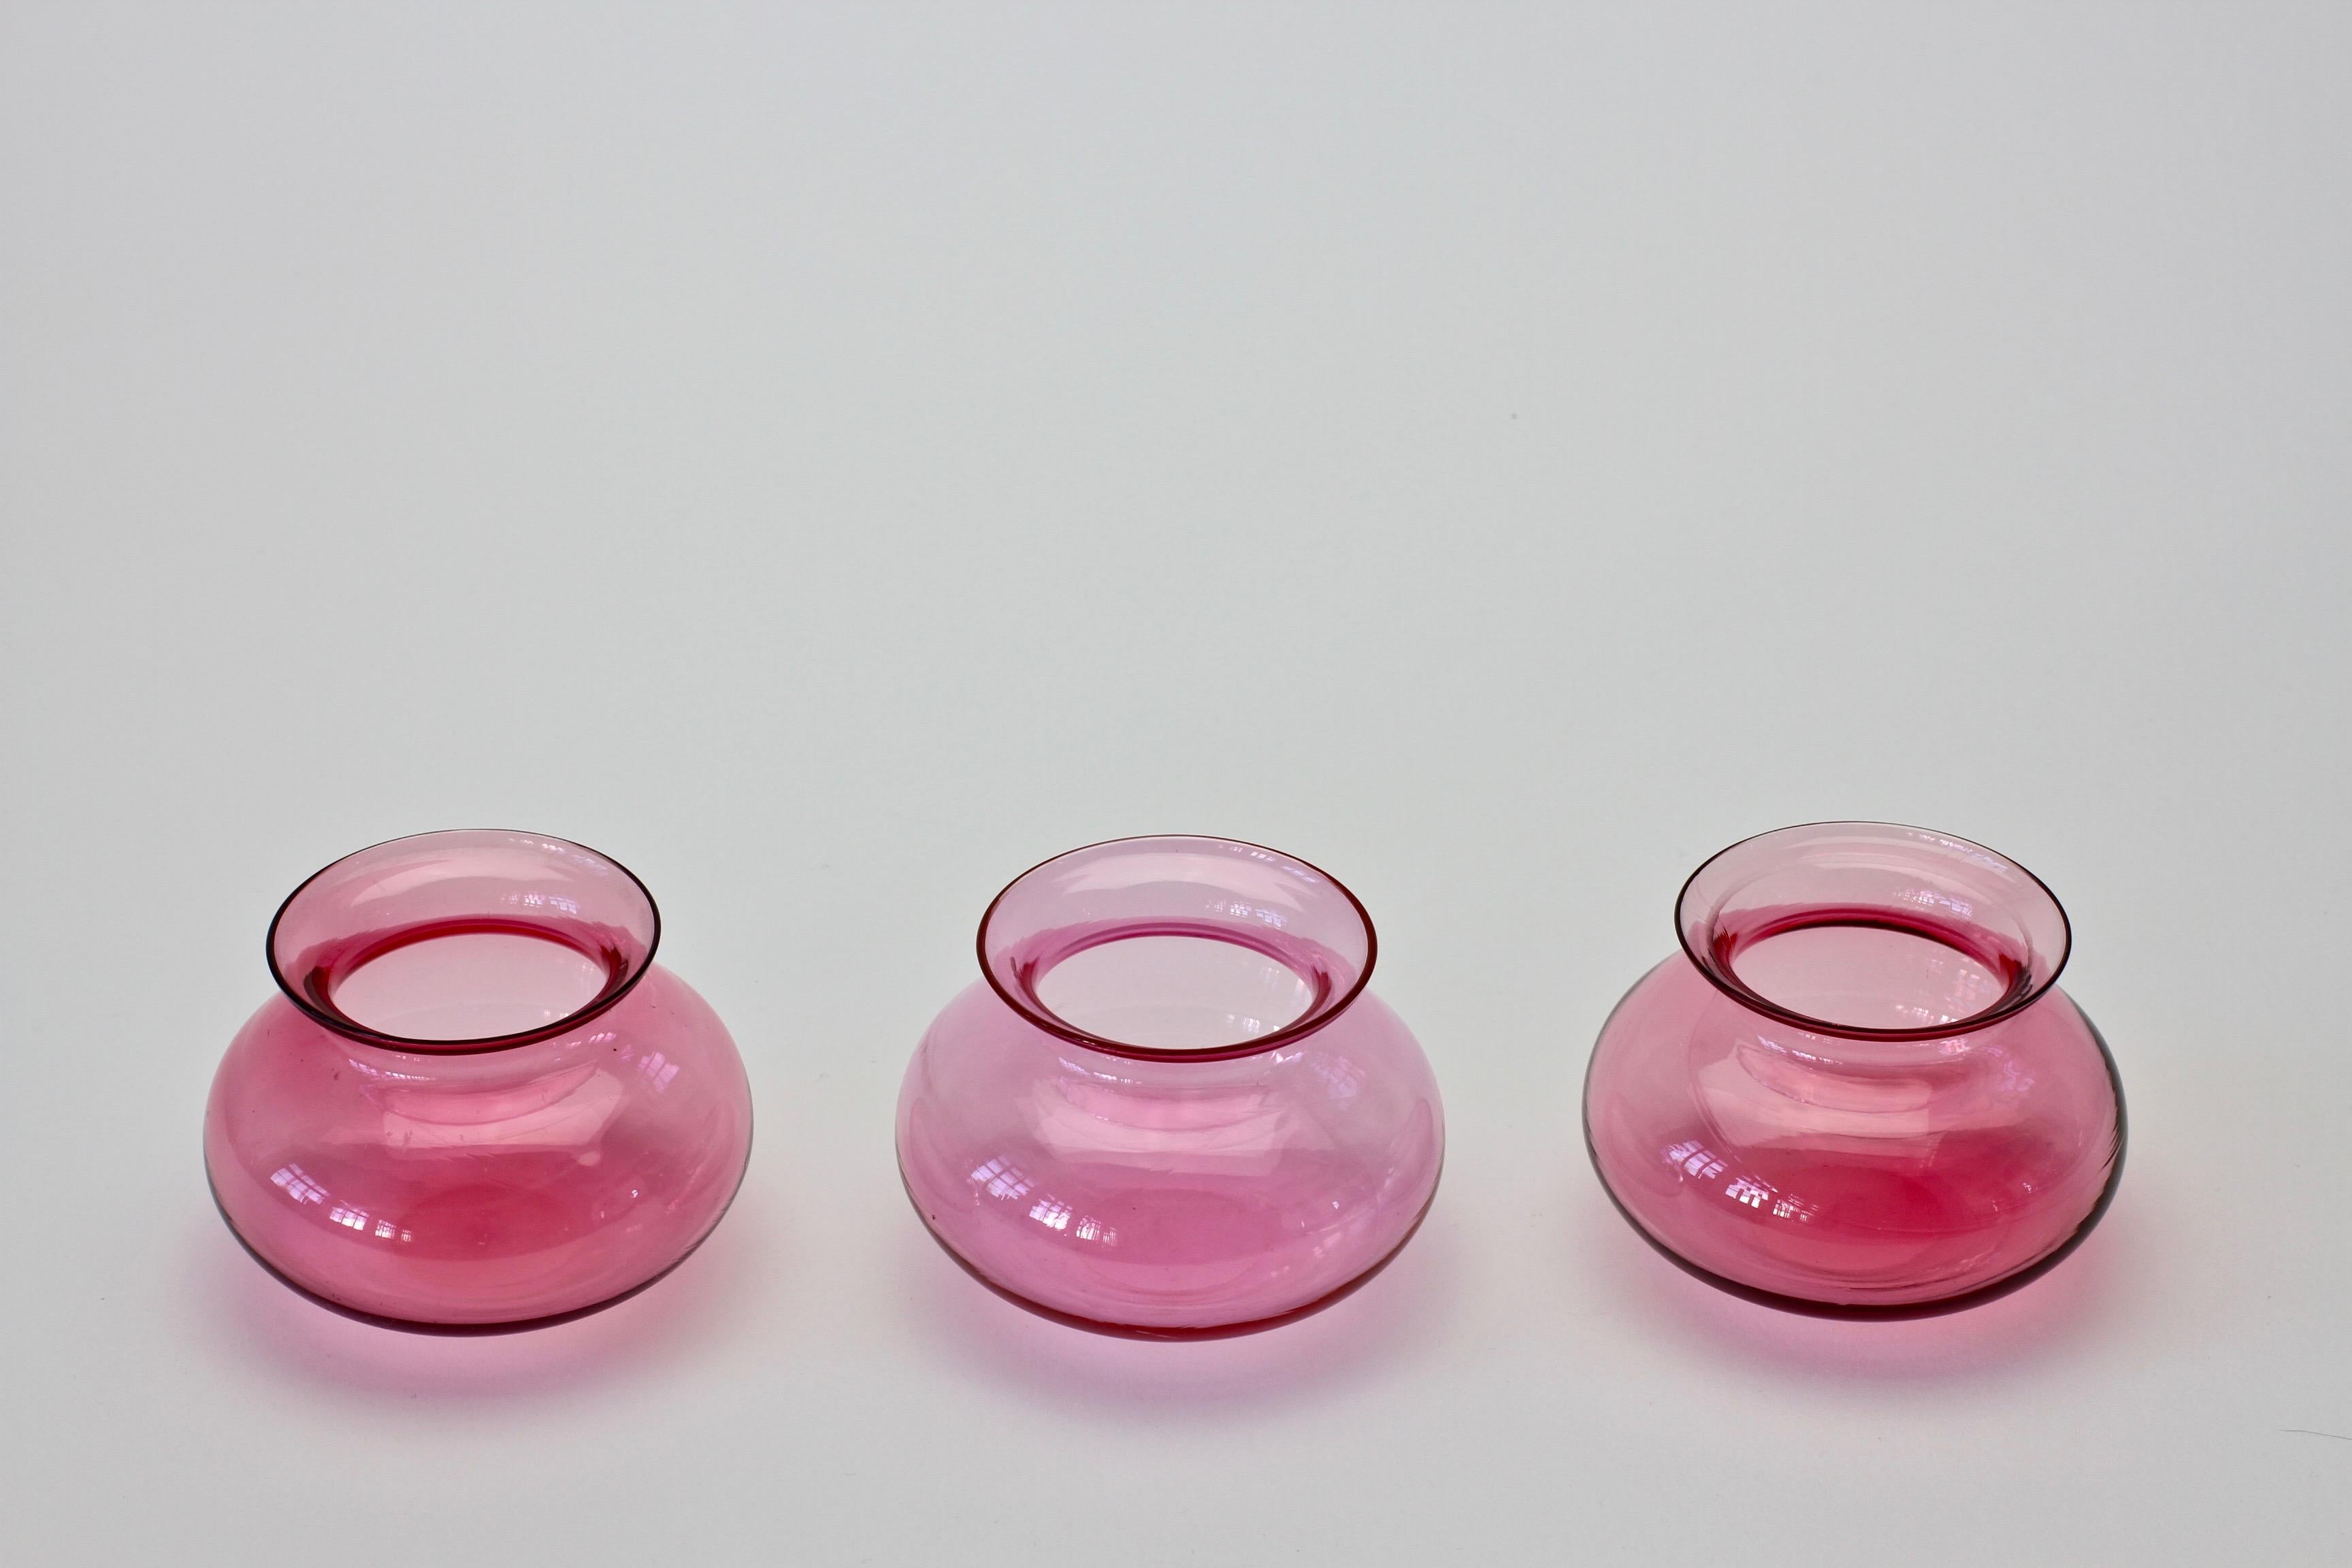 Ensemble ou trio de trois vases en verre de Murano de couleur rose vif. Merveilleuse couleur rose translucide (couleur). Forme simple mais élégante. 

Les vases mesurent environ 5,6 cm de hauteur et 8,5 cm de diamètre. 

  